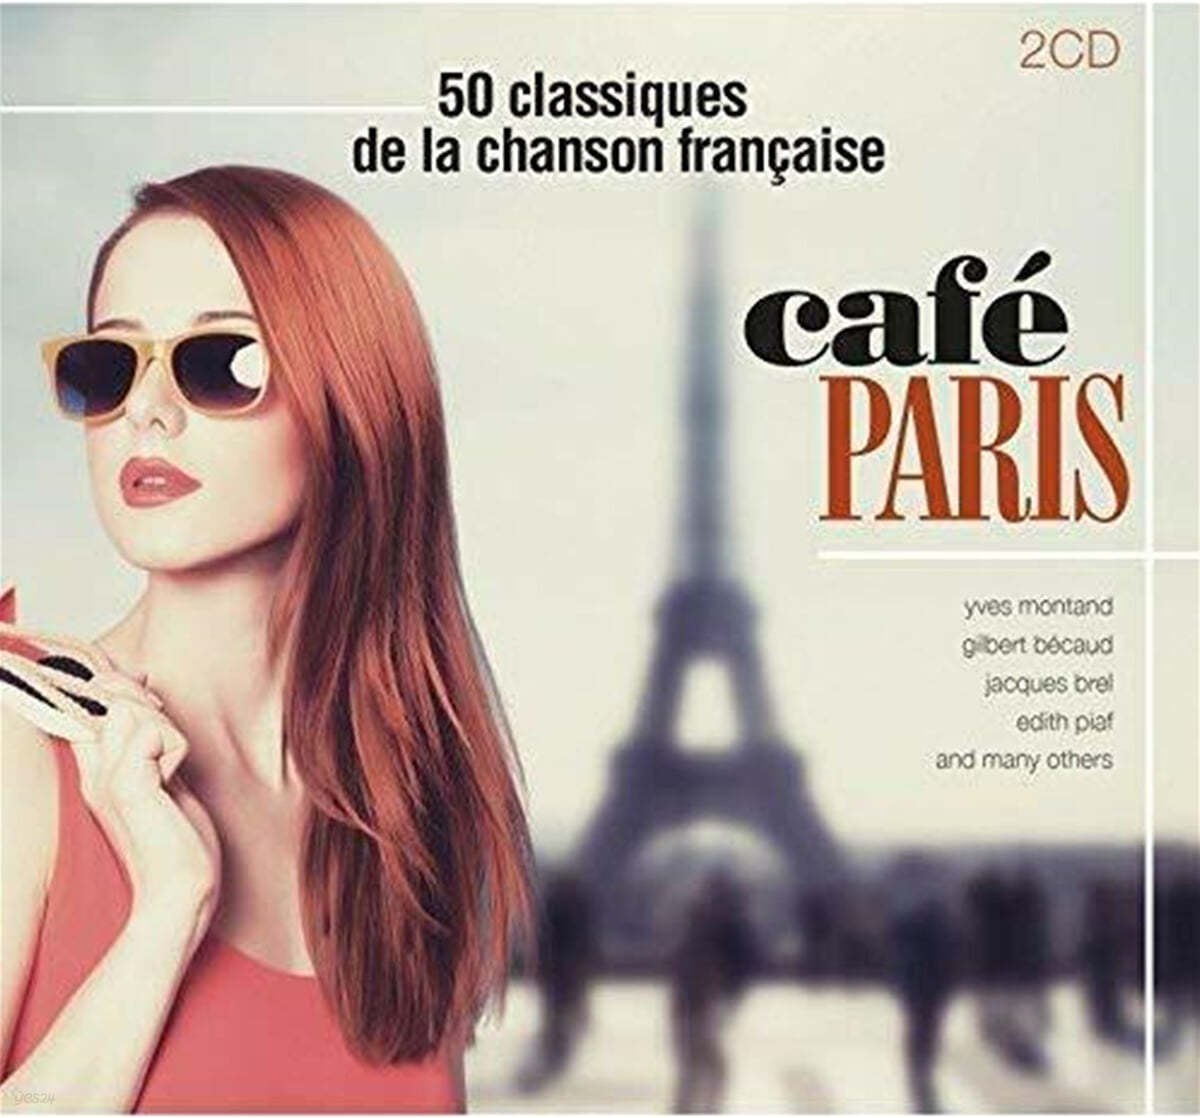 50곡의 인기 프랑스 샹송 모음집 (Cafe Paris: 50 Classiques De La Chanson Francaise) 